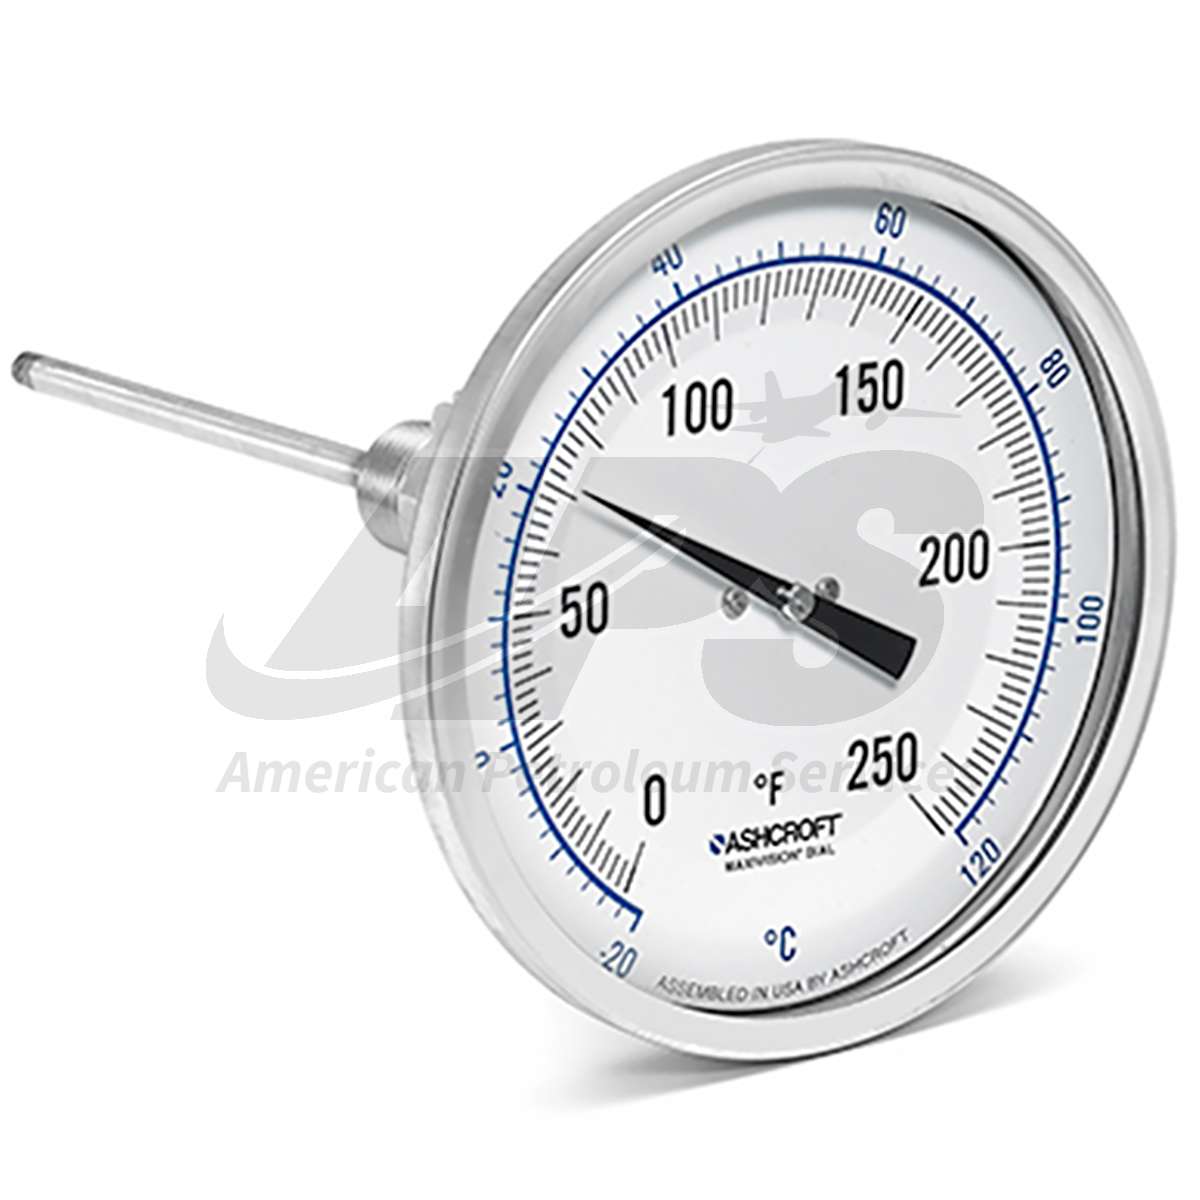 Bi-Metal Dial Thermometer